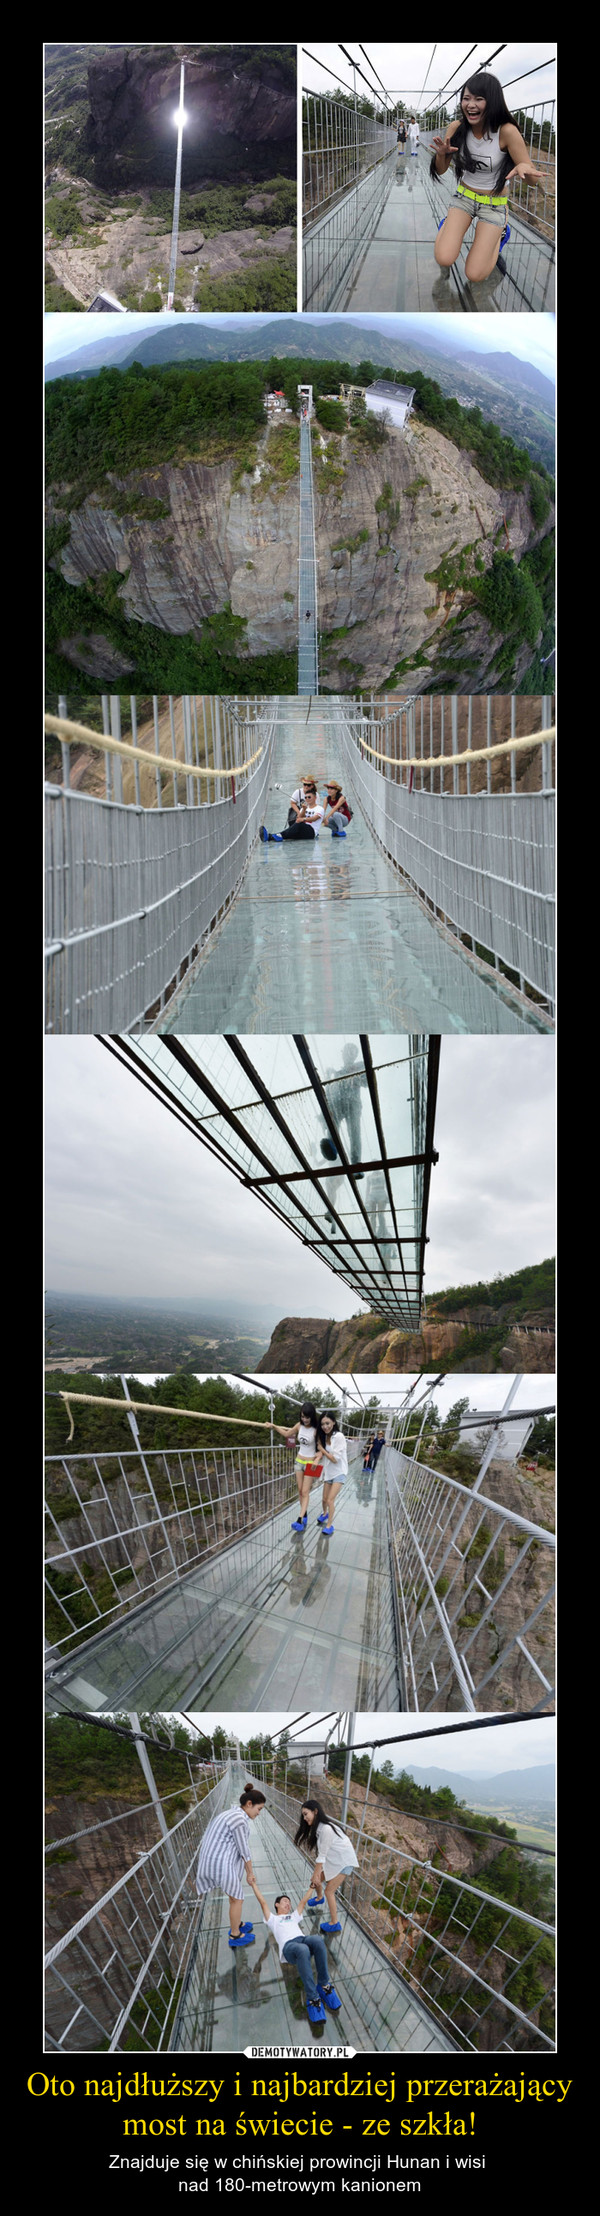 Oto najdłuższy i najbardziej przerażający most na świecie - ze szkła! – Znajduje się w chińskiej prowincji Hunan i wisi nad 180-metrowym kanionem 